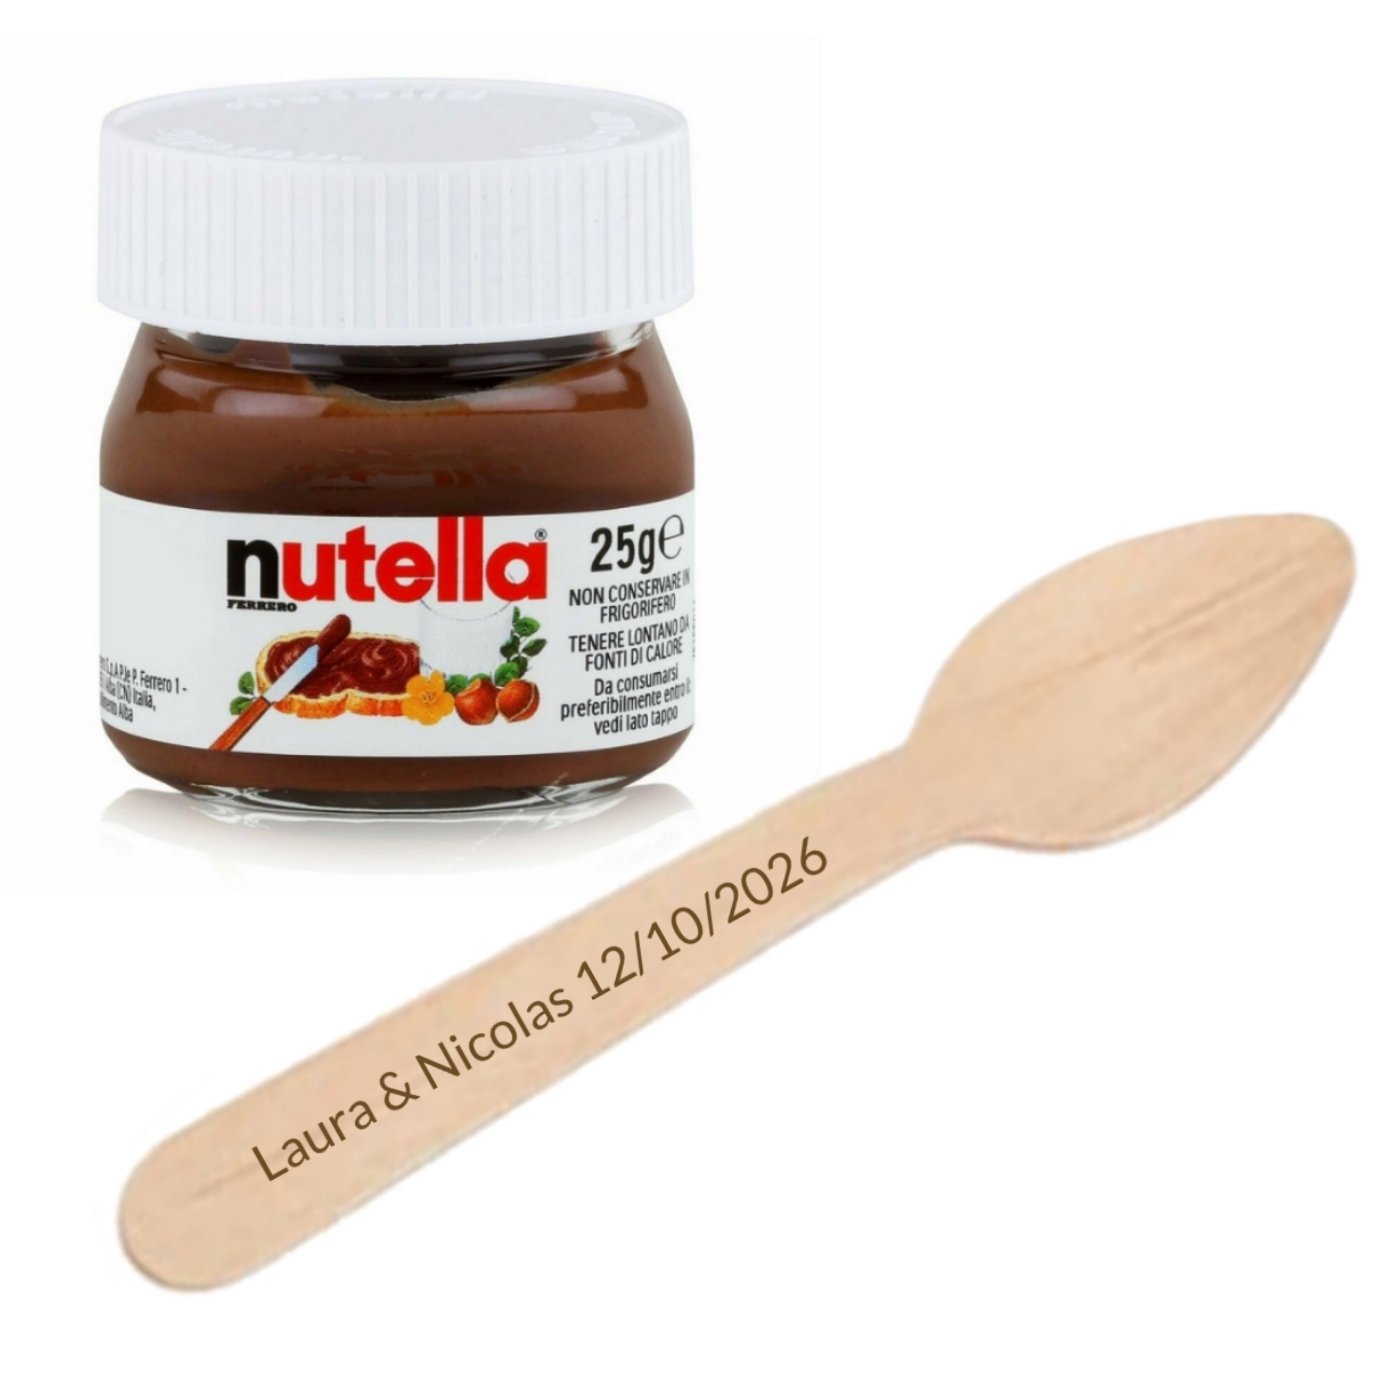 NRJ on X: #JePourraisEnMangerTouteMaVie : le Nutella (à la petite cuillère  bien sûr !) La base quoi 😋  / X